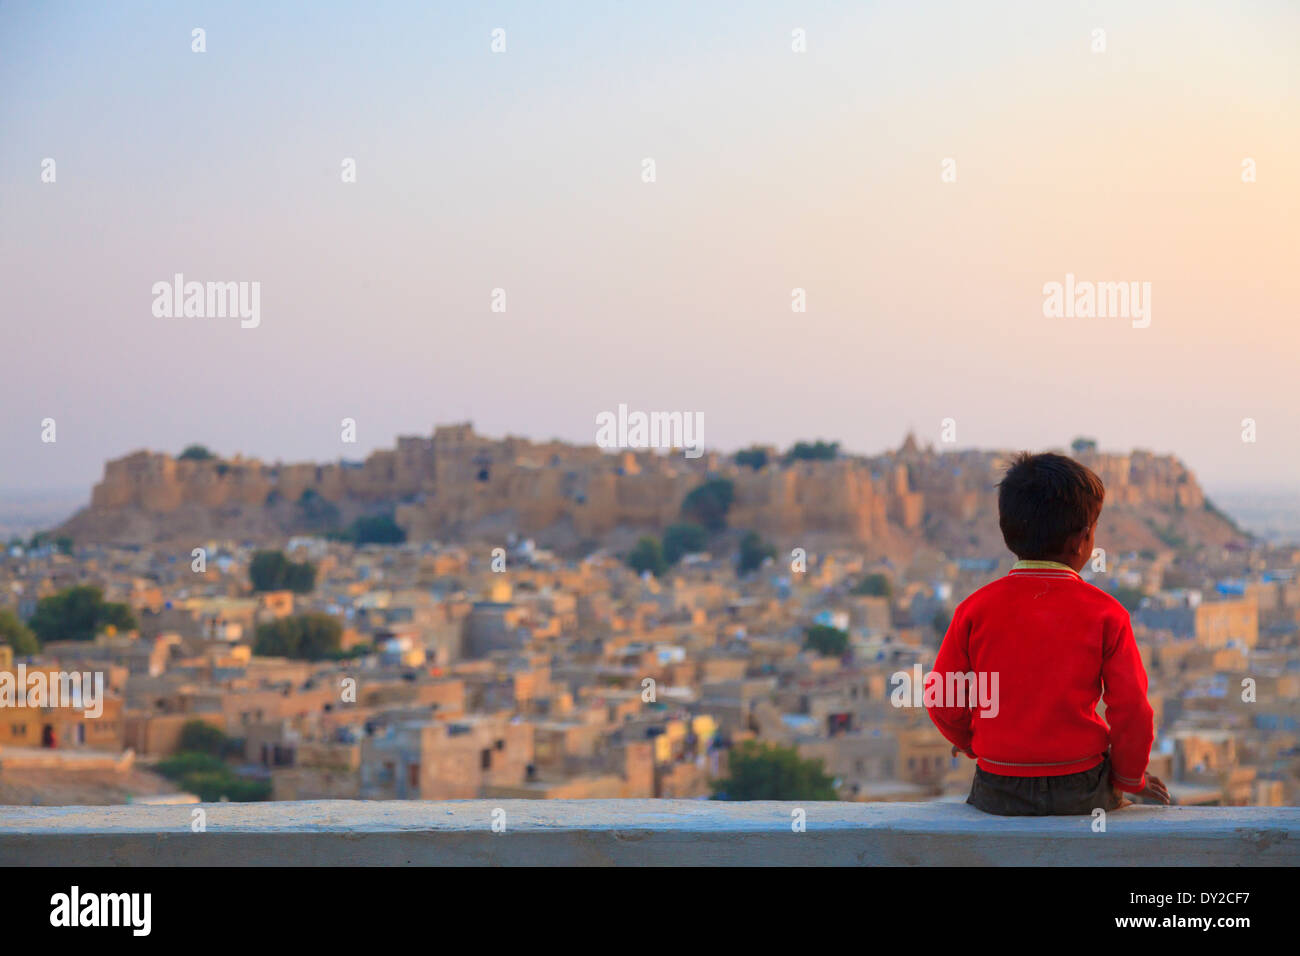 L'Inde, Rajasthan, Jaisalmer, Jaisalmer Fort et les enfants Banque D'Images